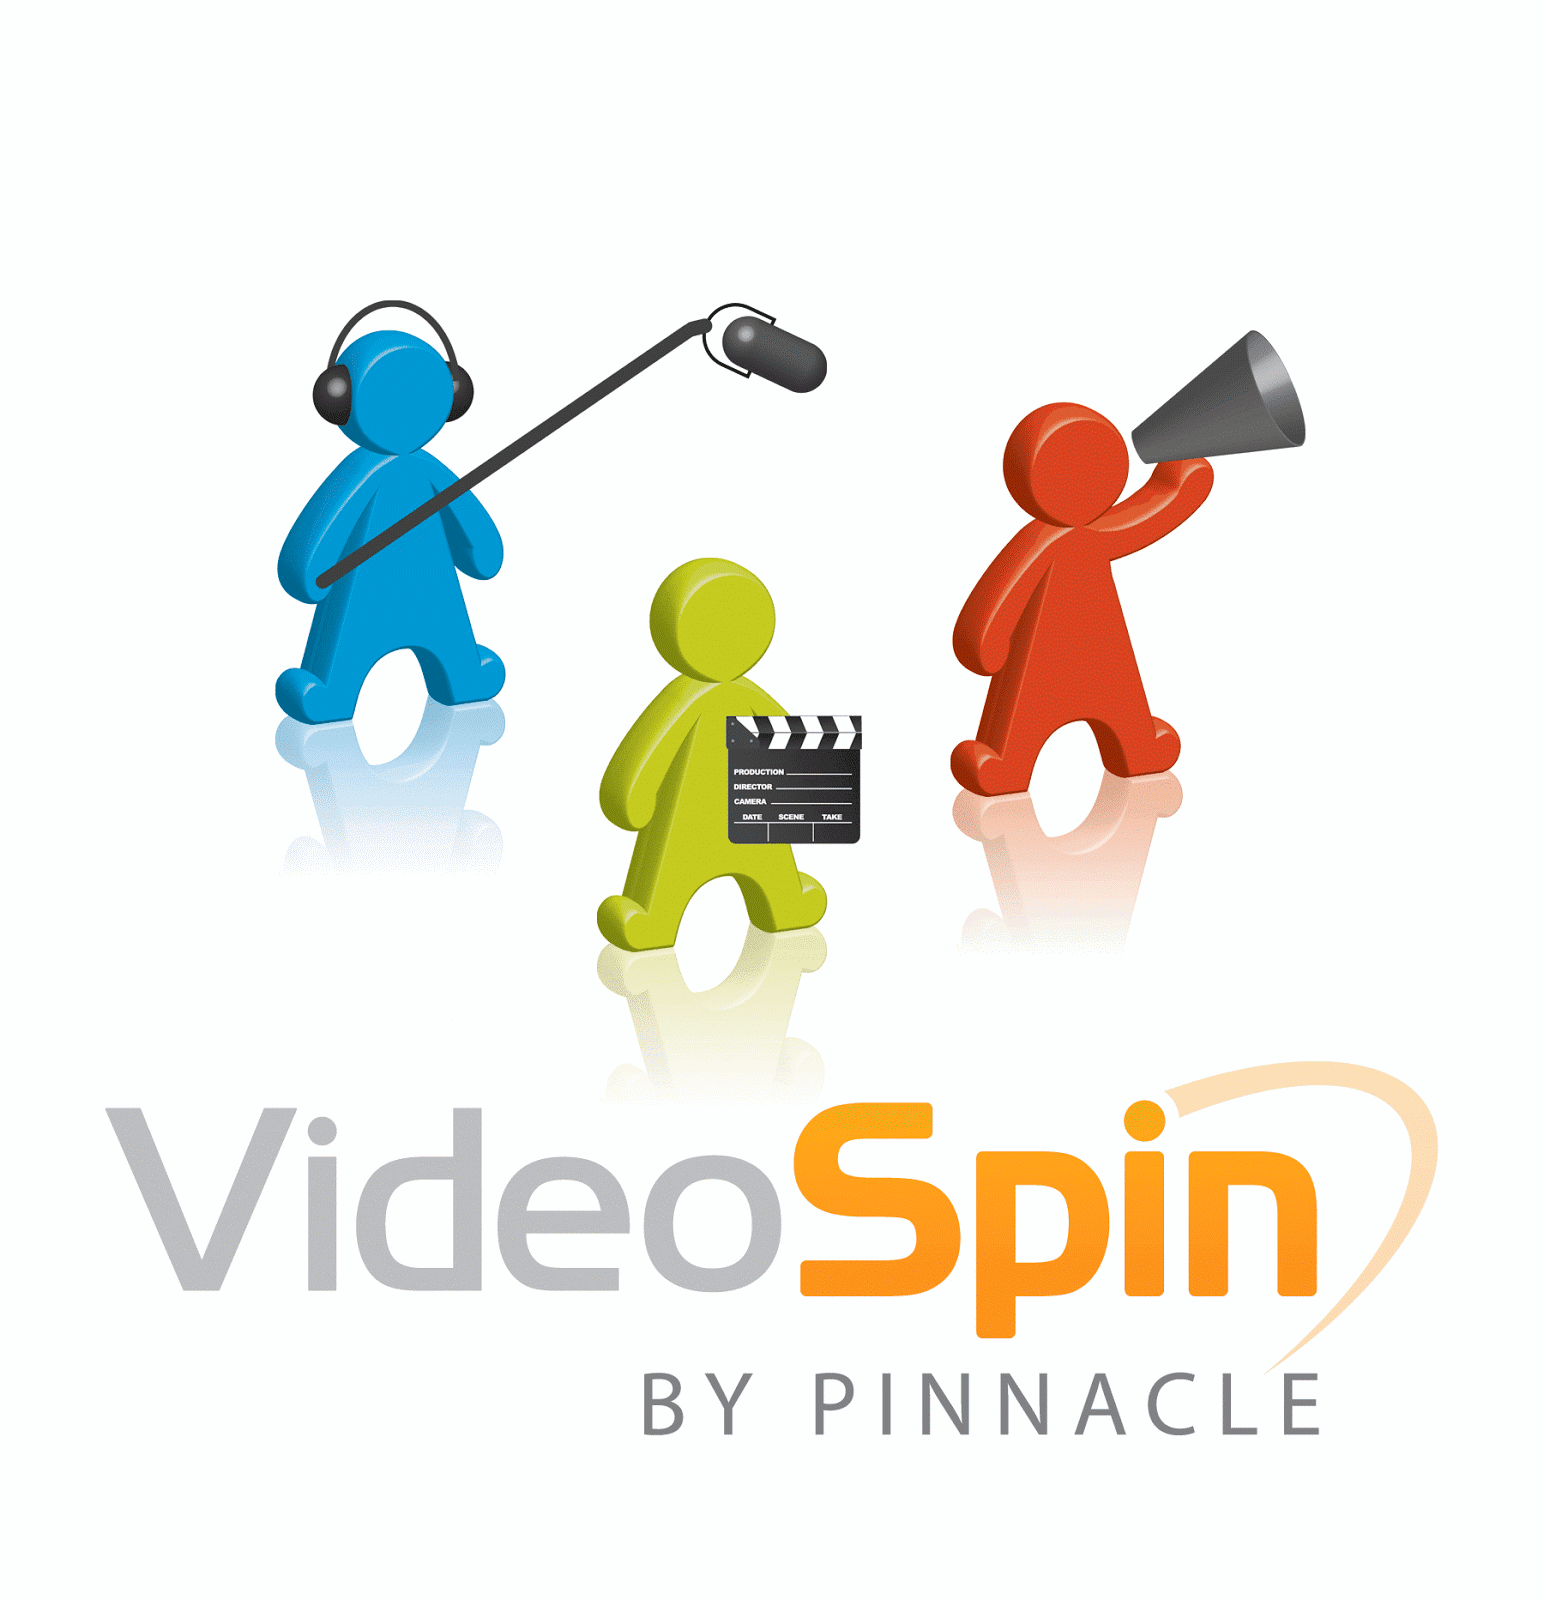 Spin videos